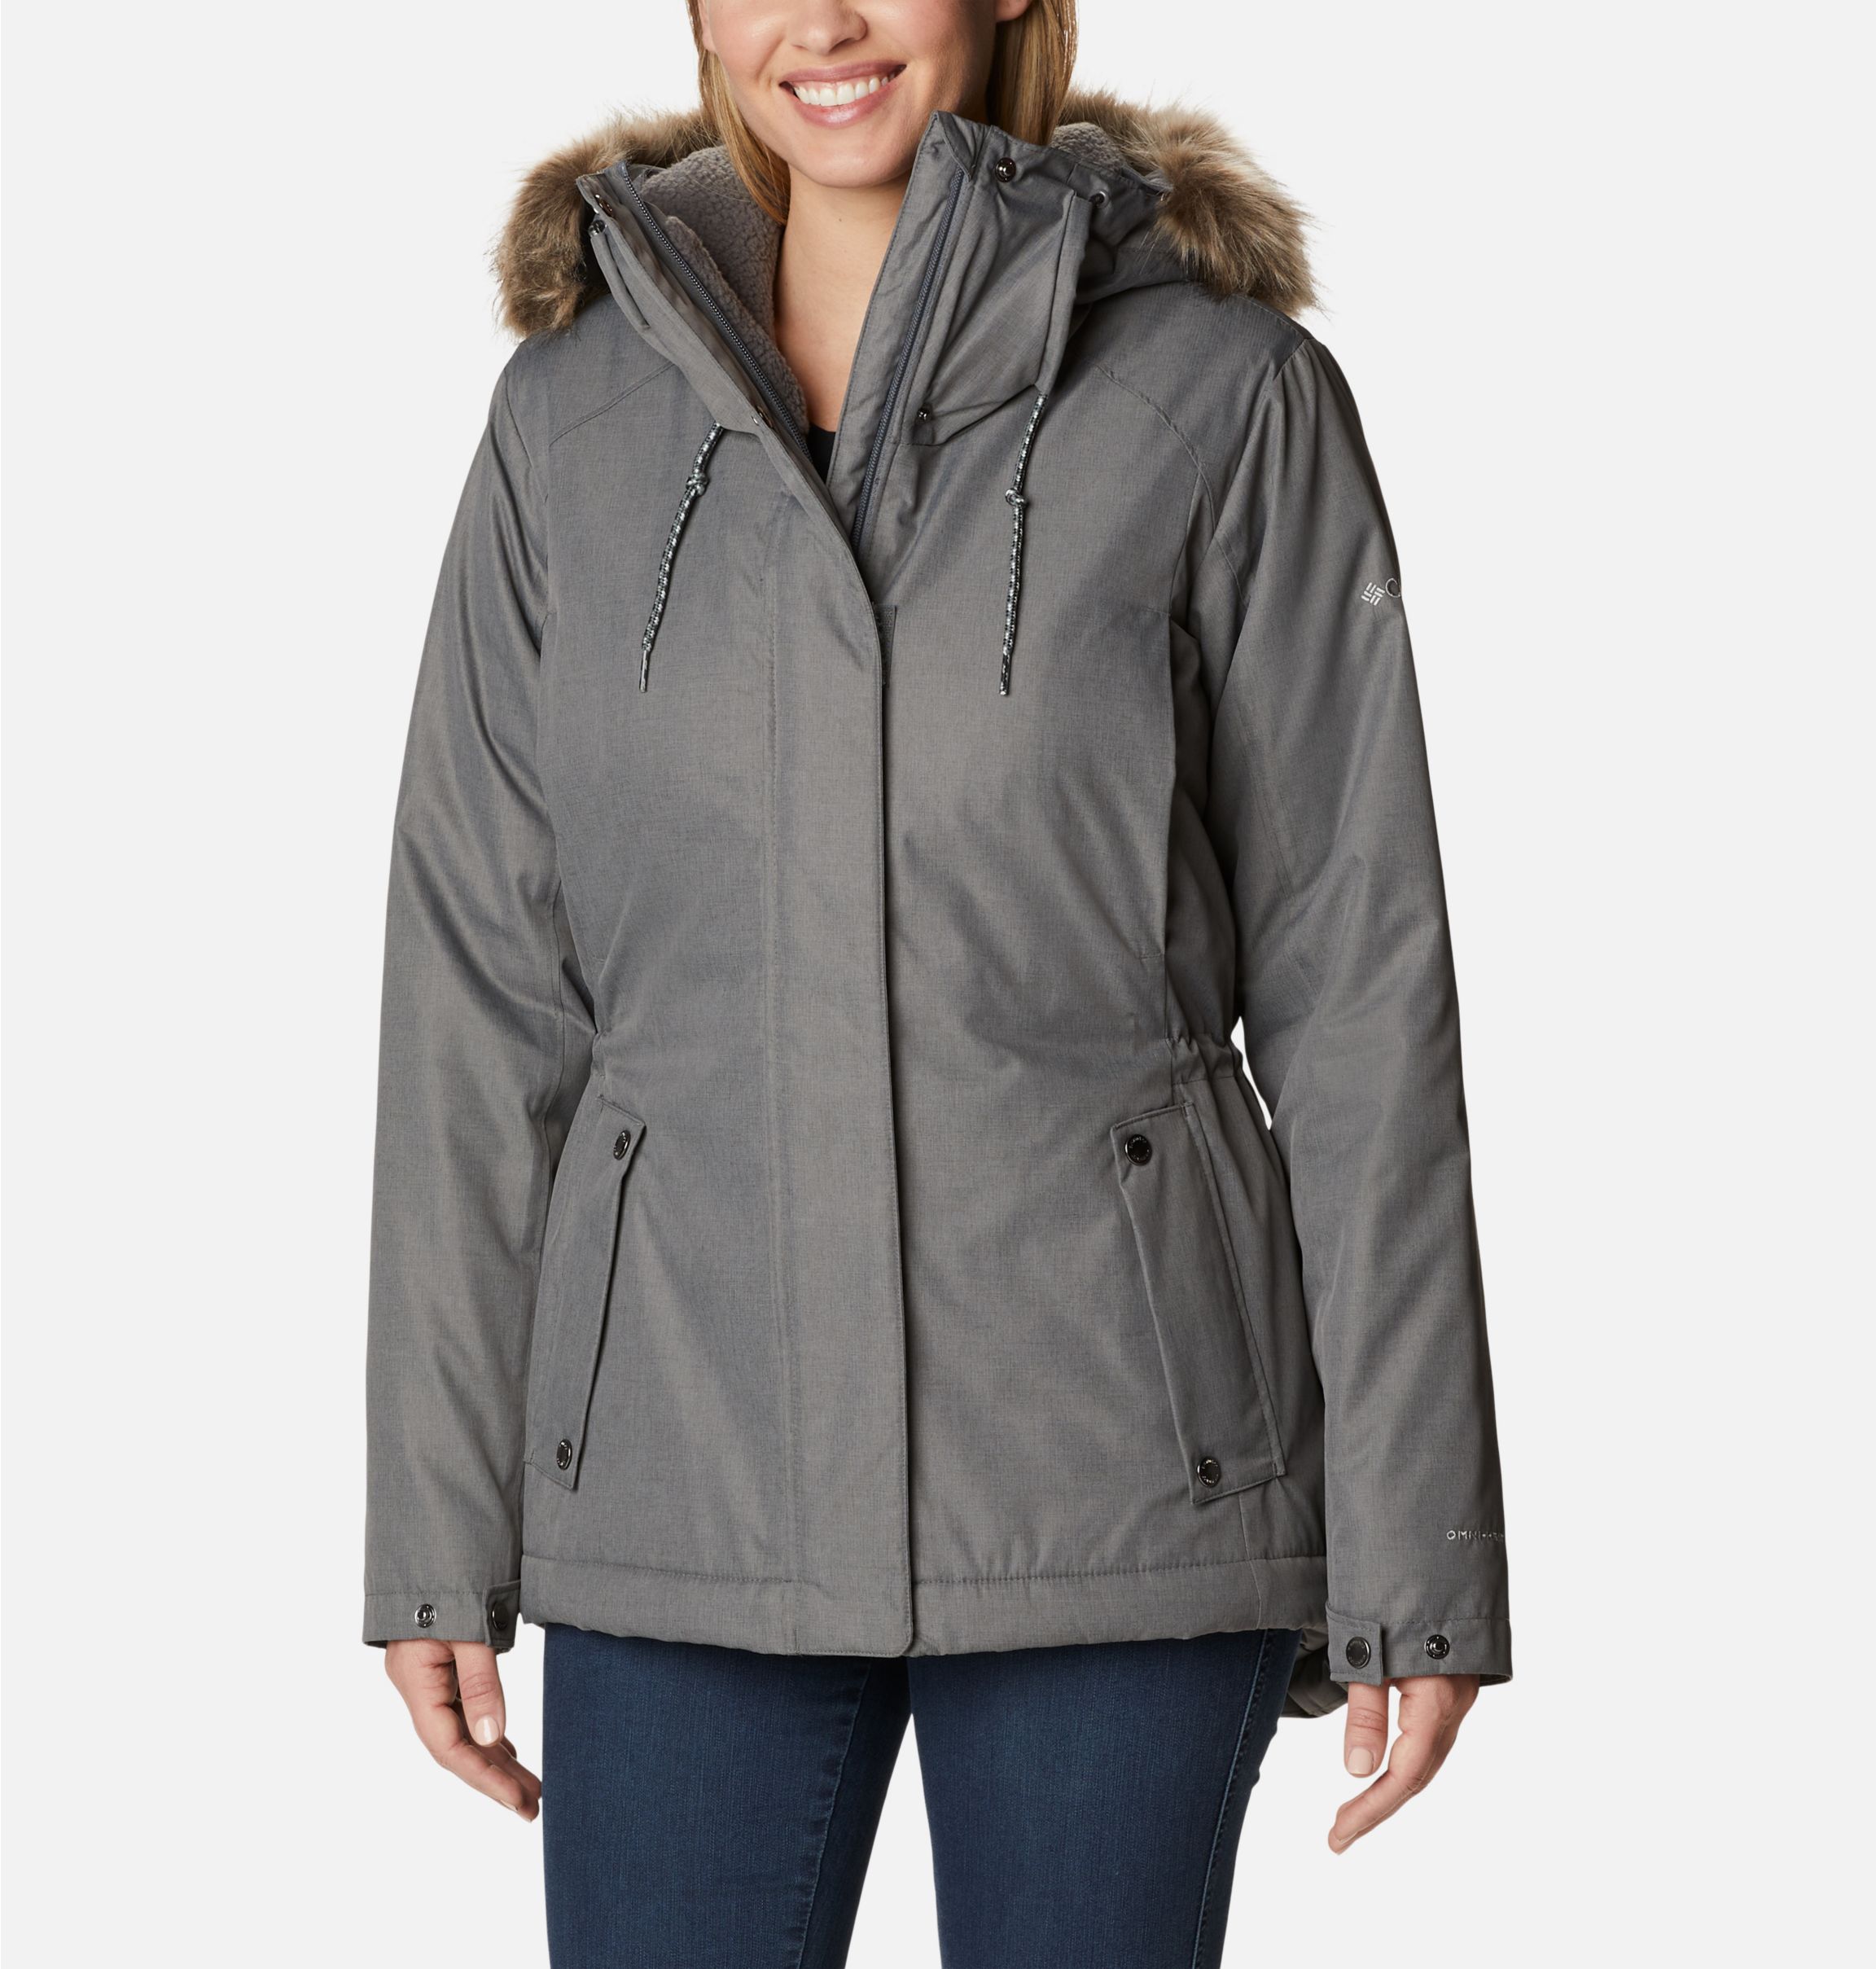 Women's Suttle Mountain™ II Insulated Jacket | Columbia Sportswear